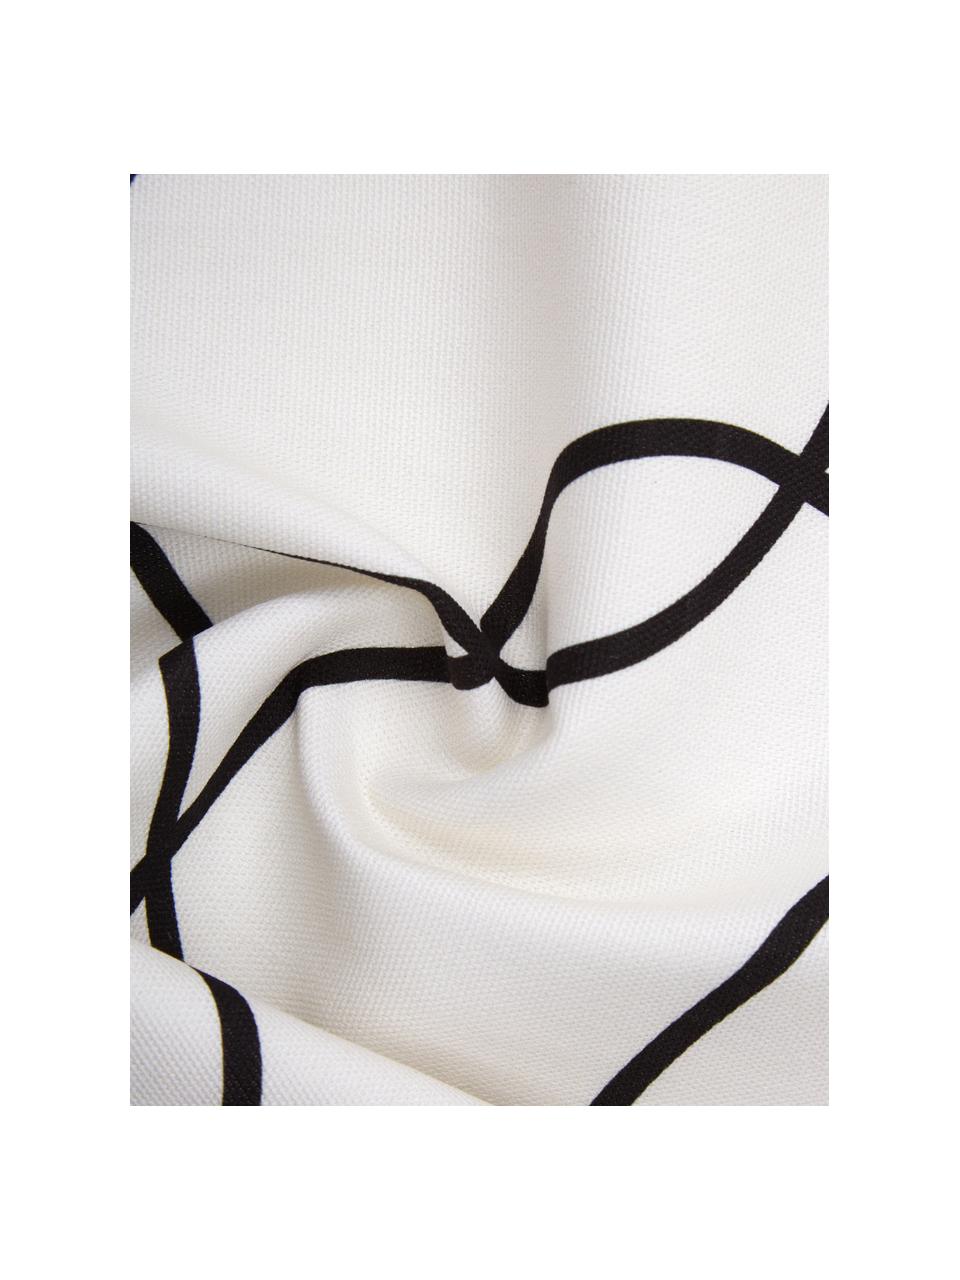 Kissenhülle Laleh mit abstraktem Print aus Bio-Baumwolle, 100% Bio-Baumwolle, GOTS-zertifiziert, Cremeweiß, Schwarz, B 45 x L 45 cm